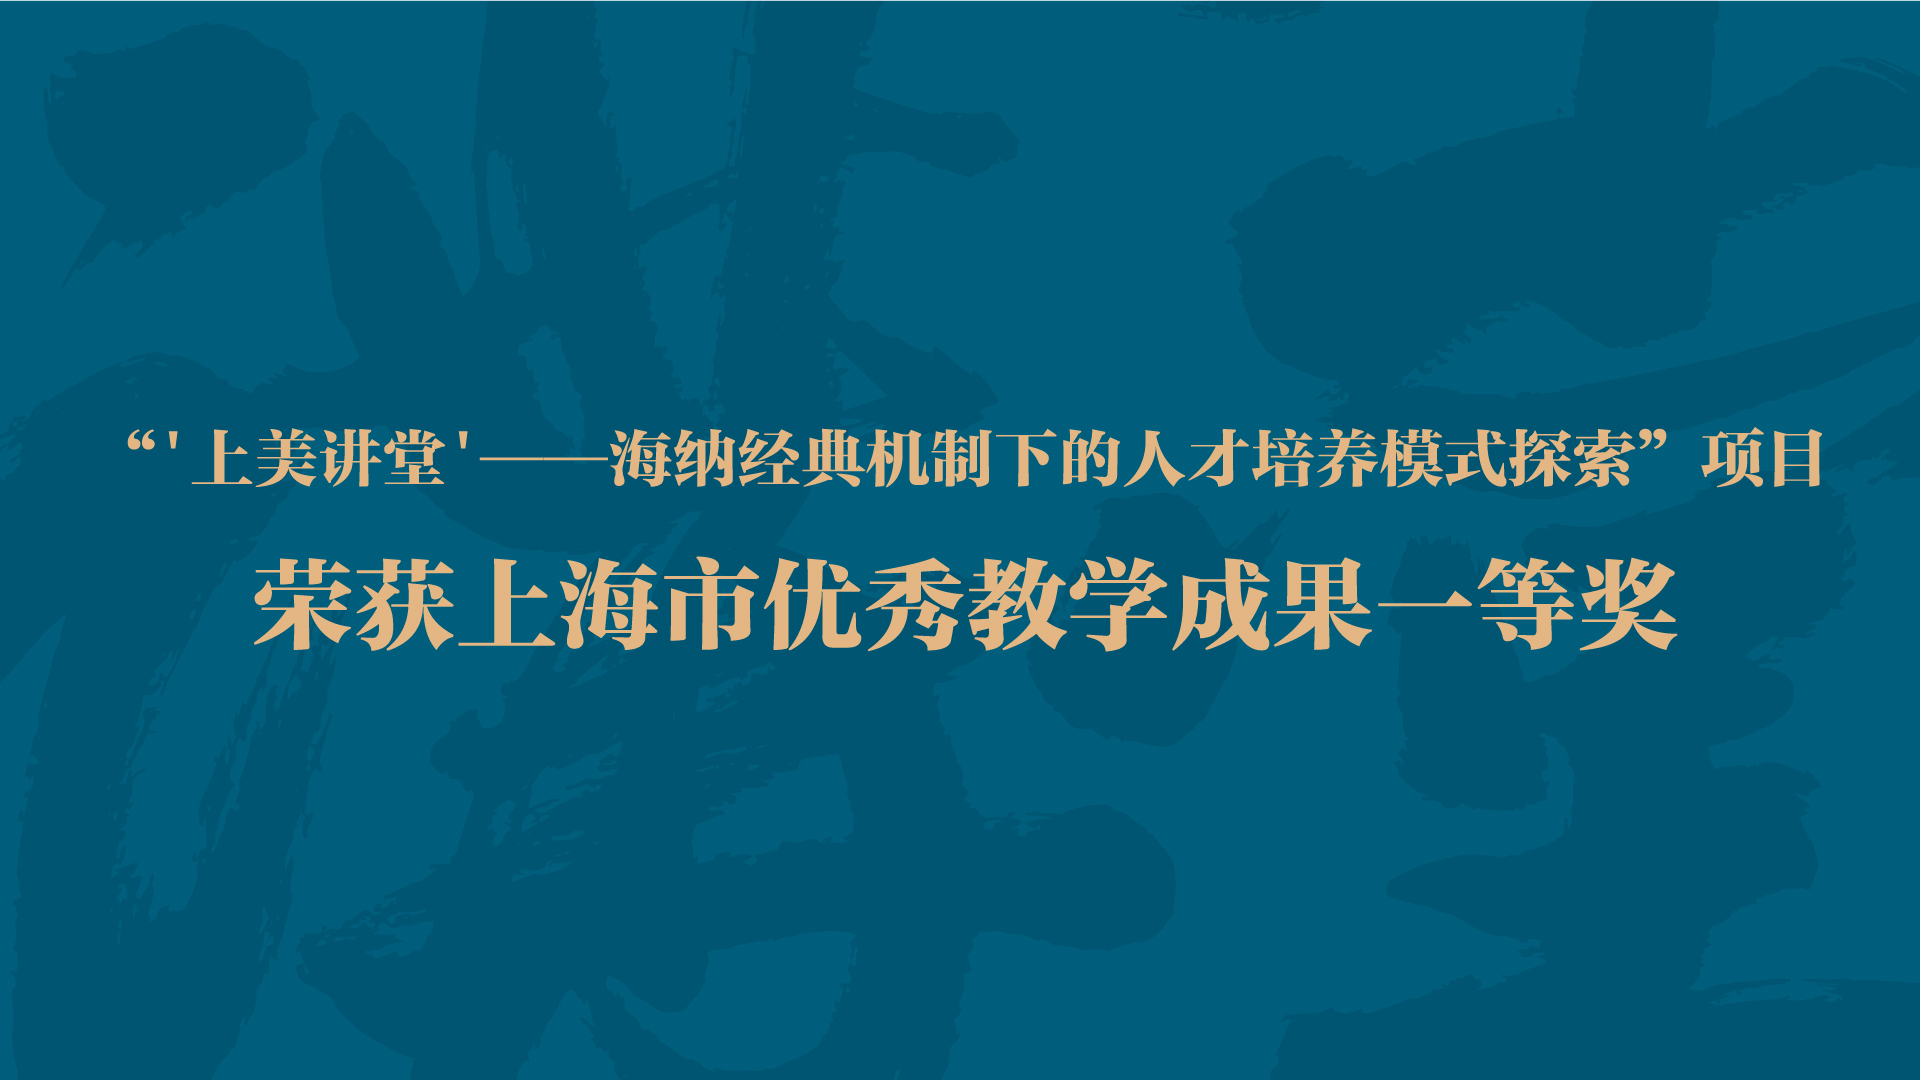 "上美讲堂"——海纳经典机制下的人才培养模式探索项目荣获上海市优秀教学成果一等奖